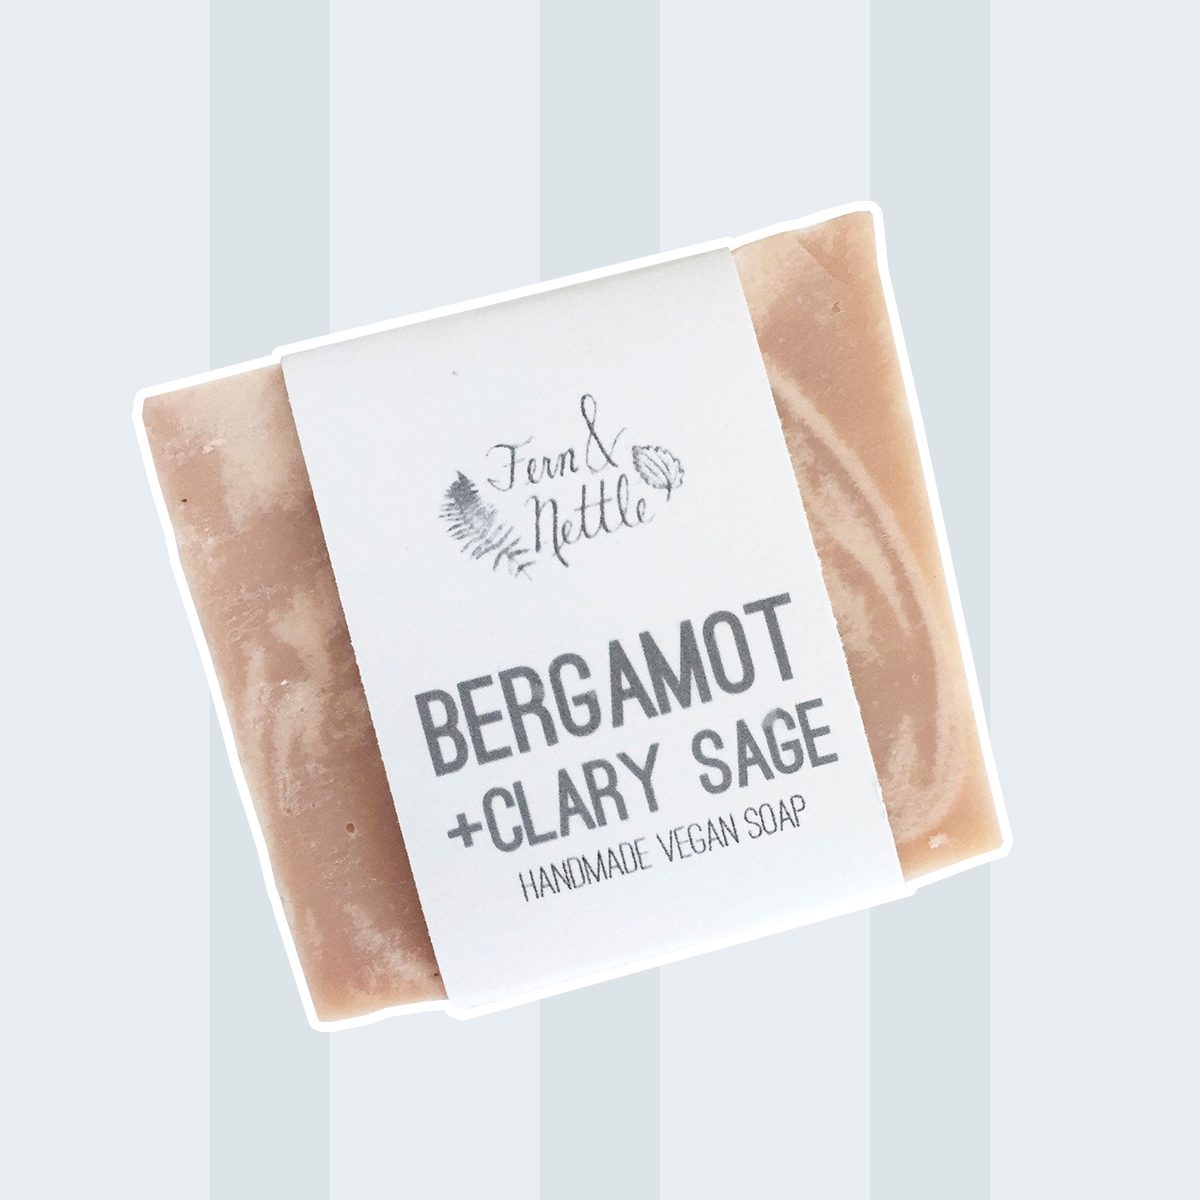 Bergamot+Sage Handmade Vegan Soap